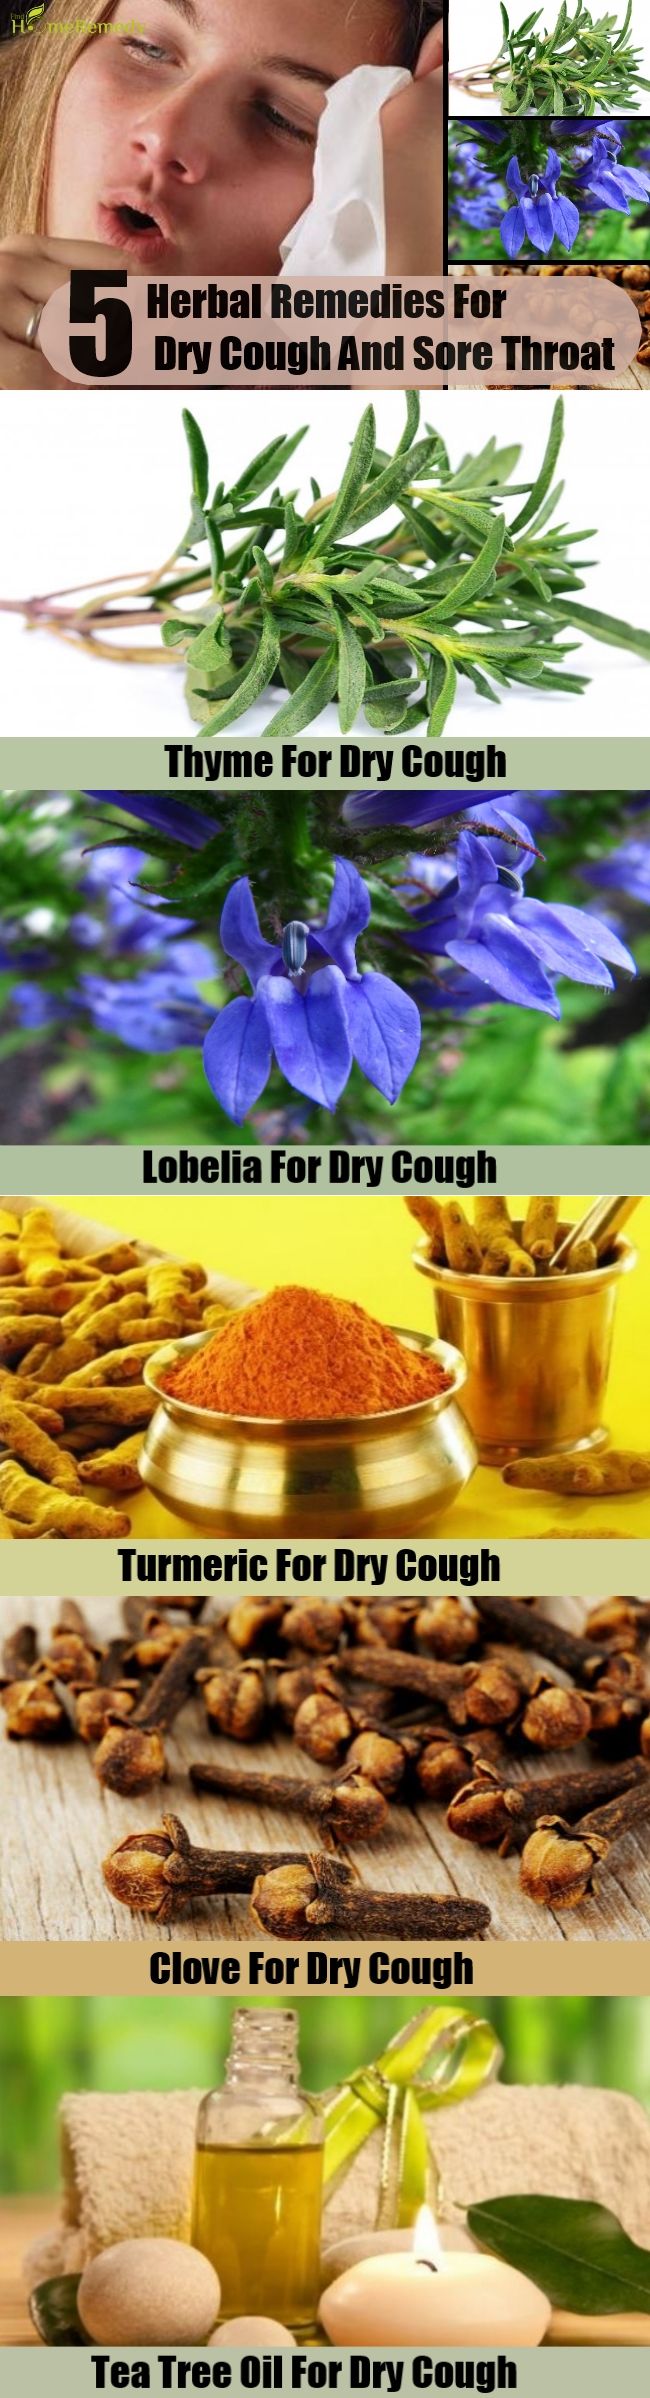 5 Remèdes naturels pour la toux sèche et maux de gorge